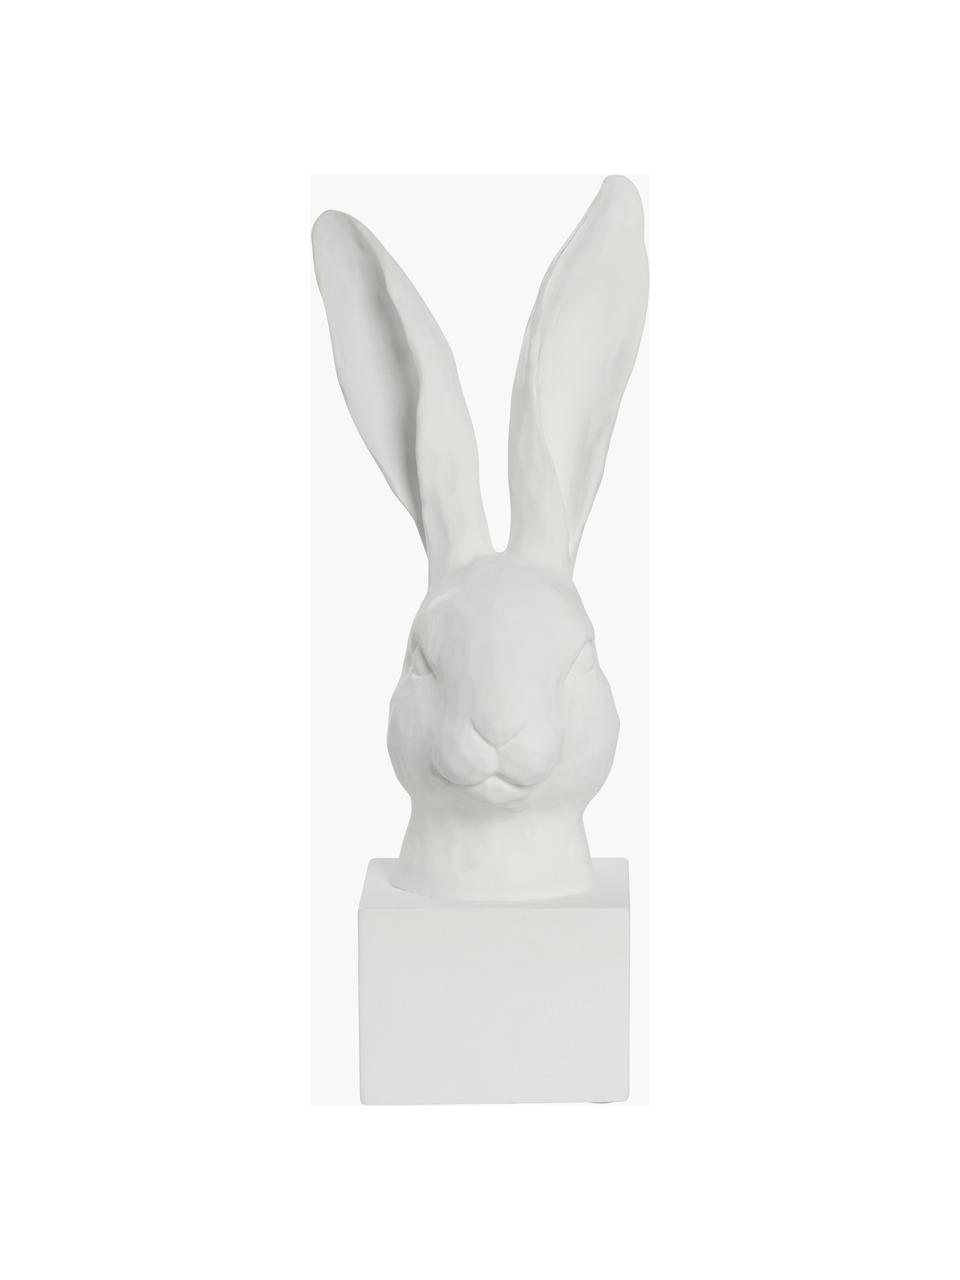 Pieza decorativa conejo Semina, Plástico con certificado Greenguard, Blanco, An 14 x Al 33 cm